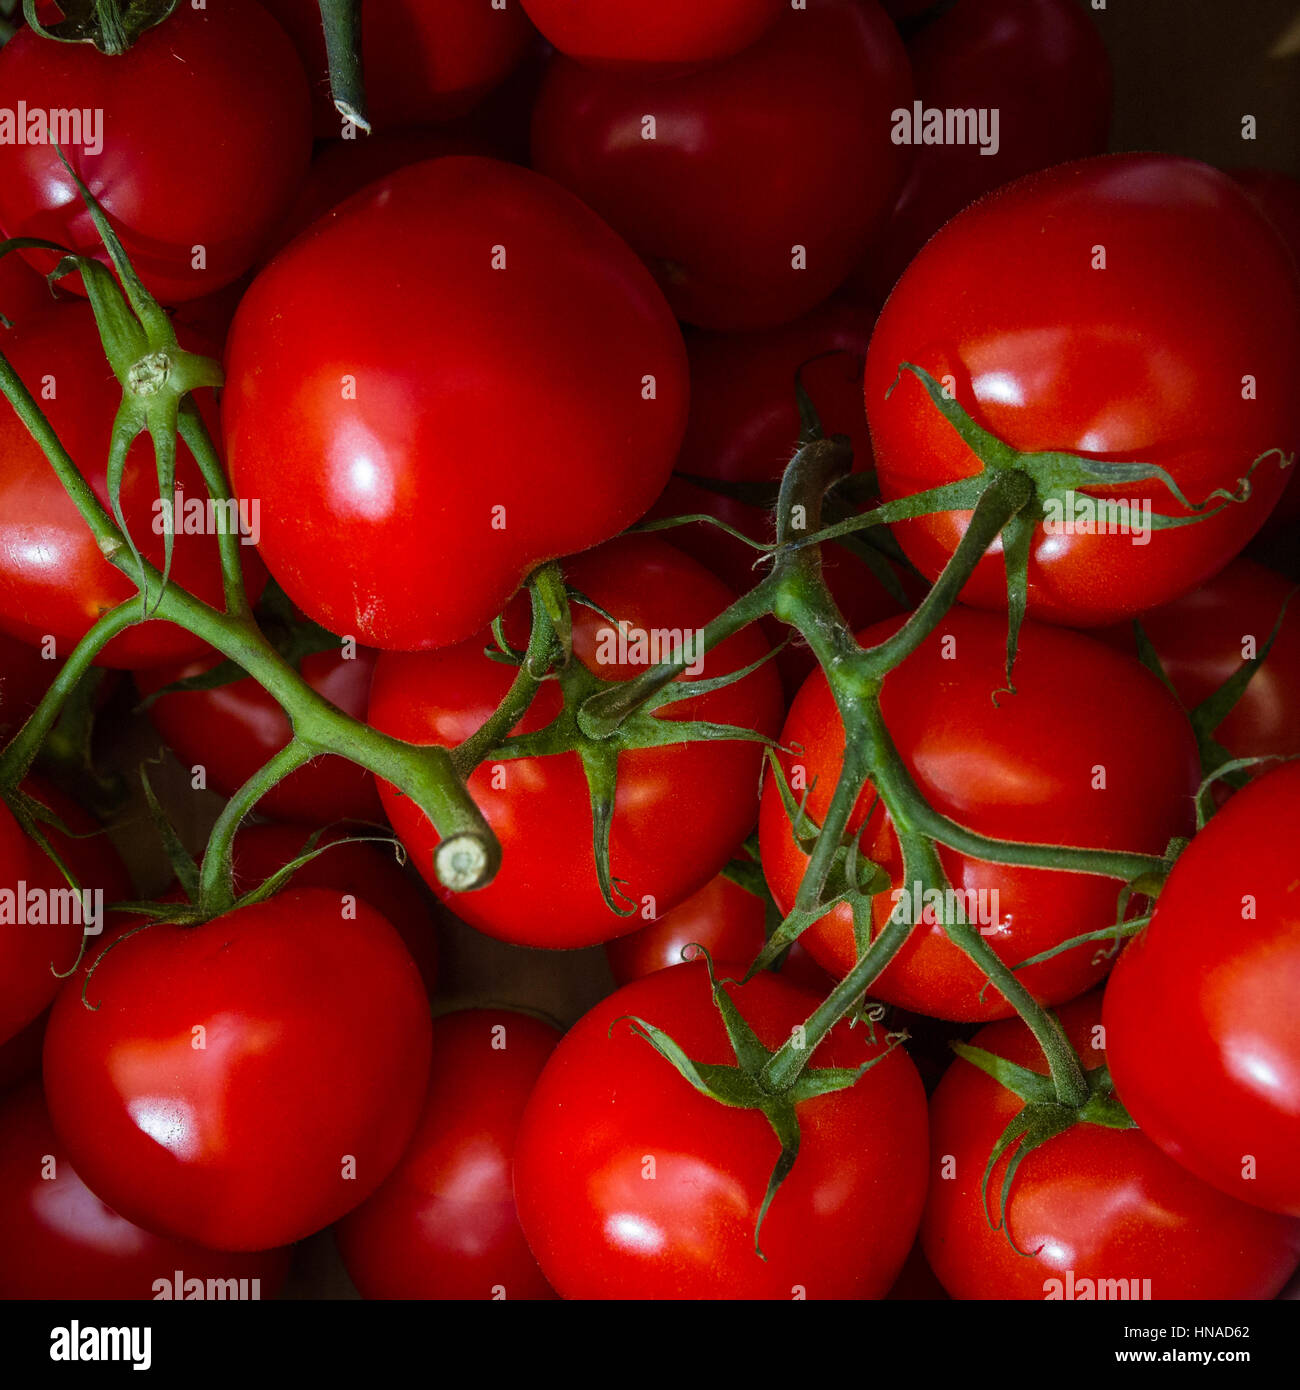 Les tomates sont le fruit d'une plante est caractéristique de leur couleur rouge Banque D'Images